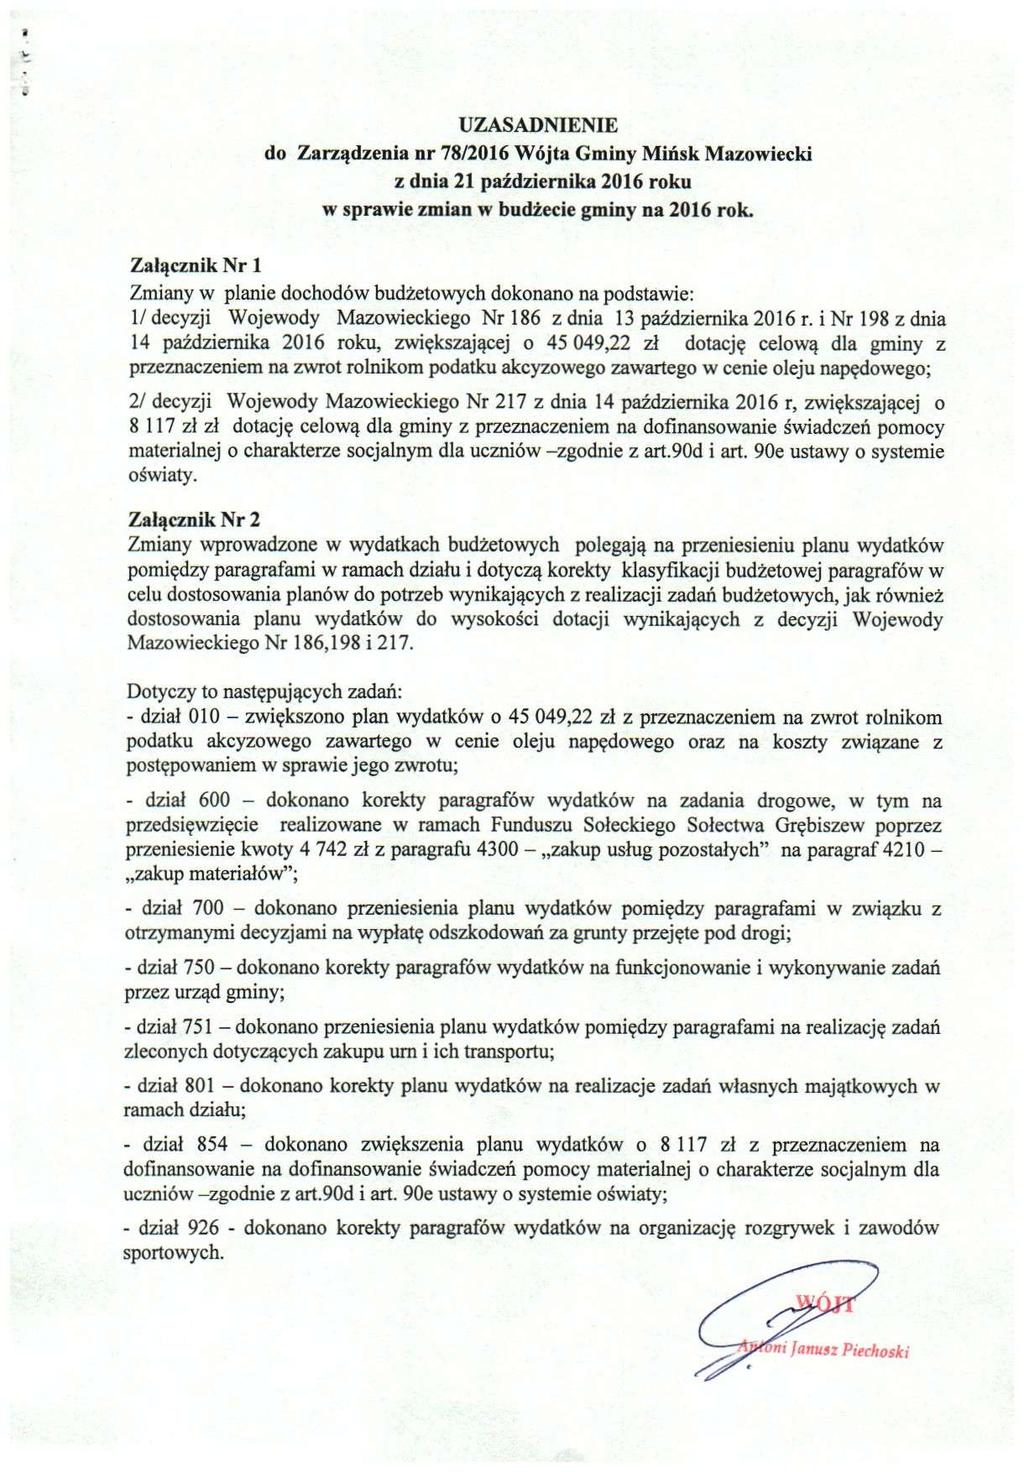 UZASADNIENIE do Zarządzenia nr 78/2016 Wójta Gminy Mińsk Mazowiecki z dnia 21 października 2016 roku w sprawie zmian w budżecie gminy na 2016 rok.